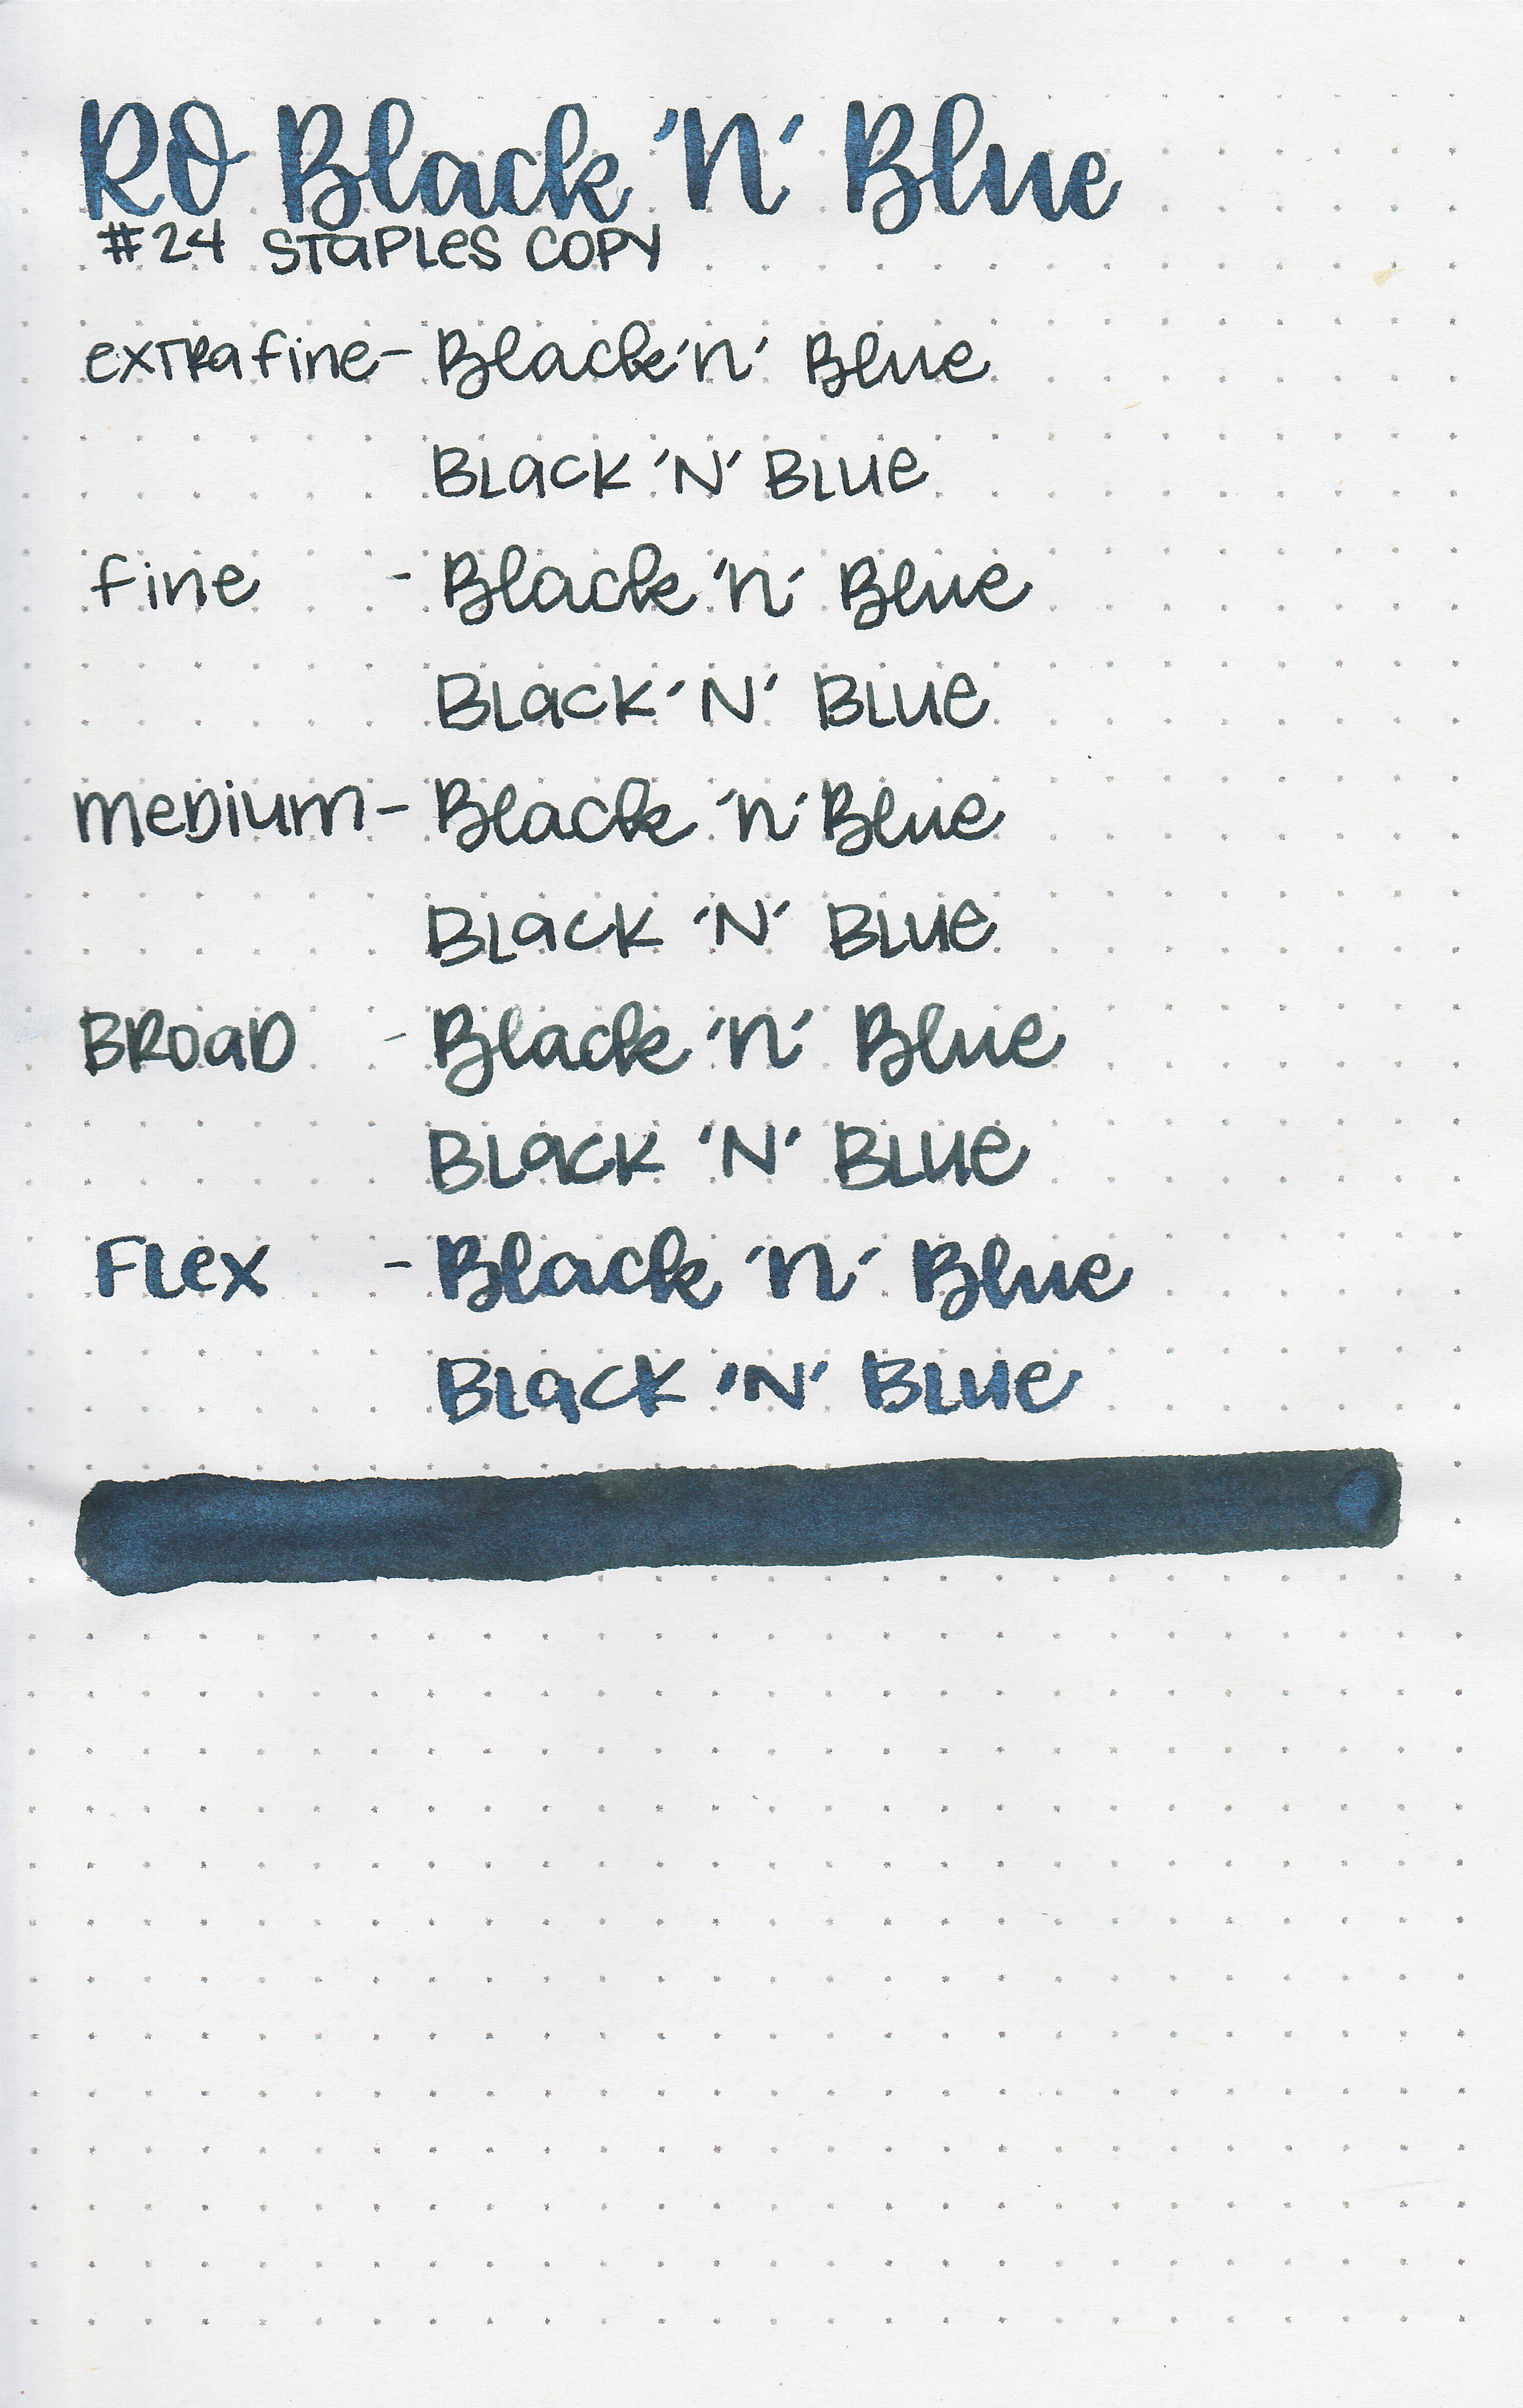 ro-black-n-blue-11.jpg